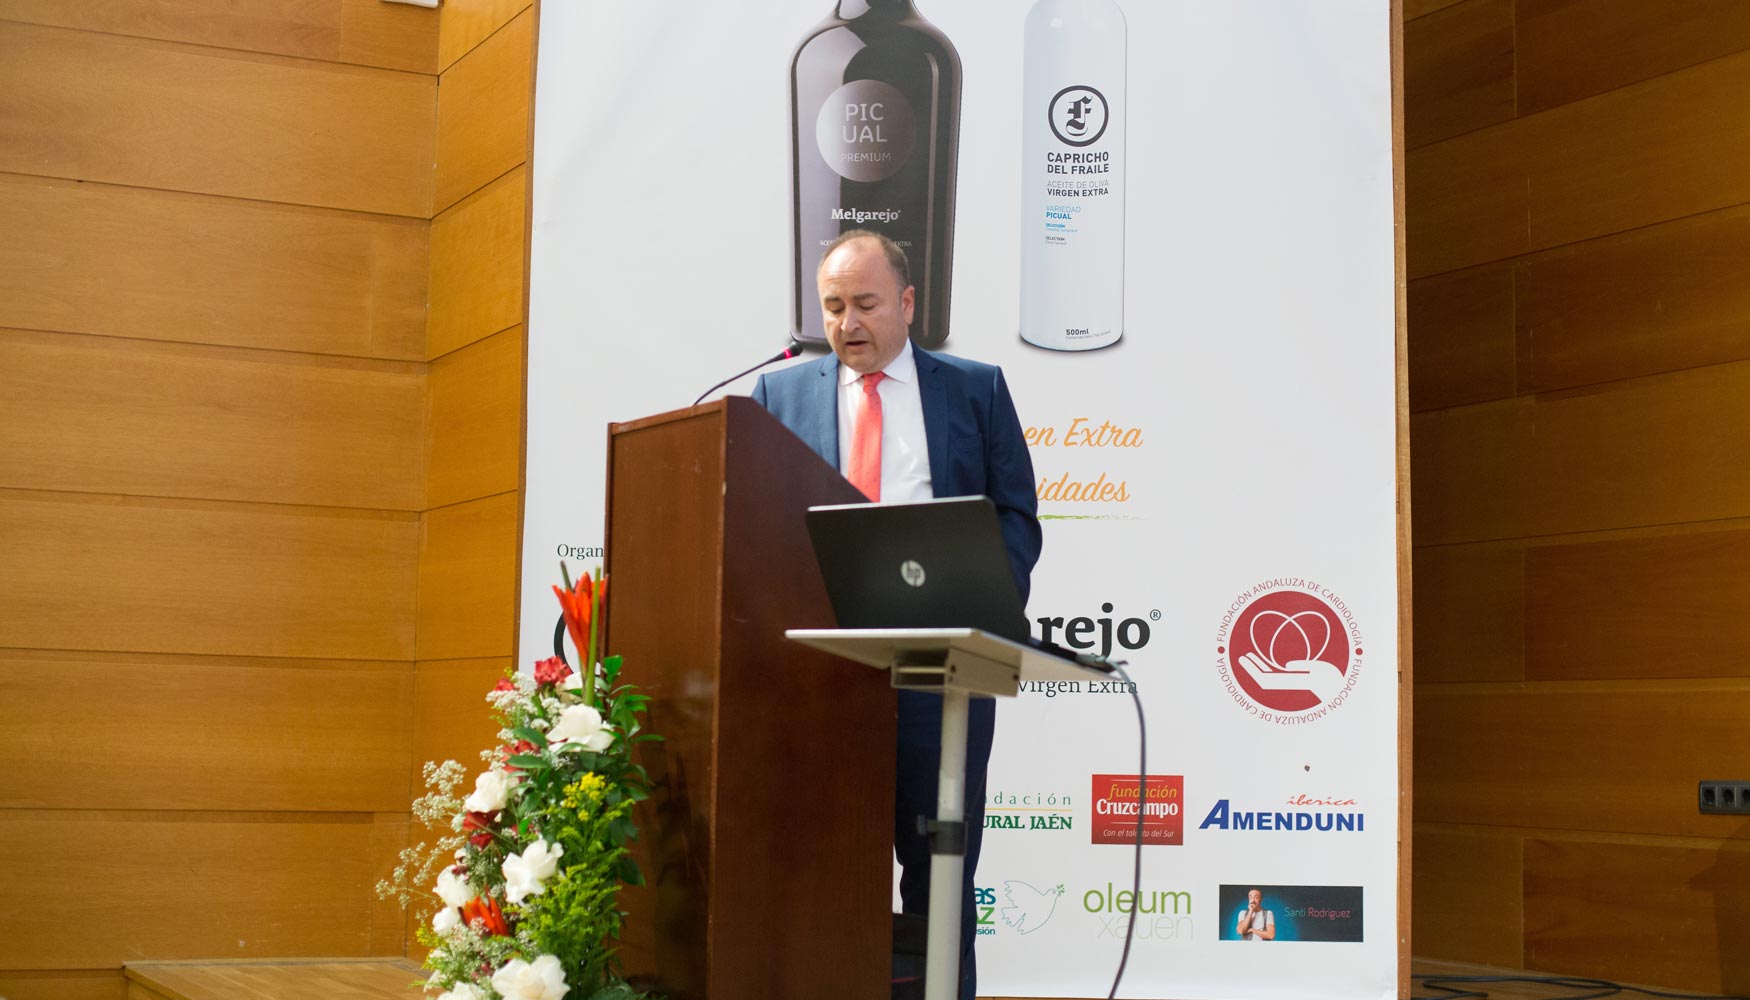 Juan Ramn Hidalgo, experto en Derecho de la Seguridad Alimentaria, Consumo y Responsabilidad